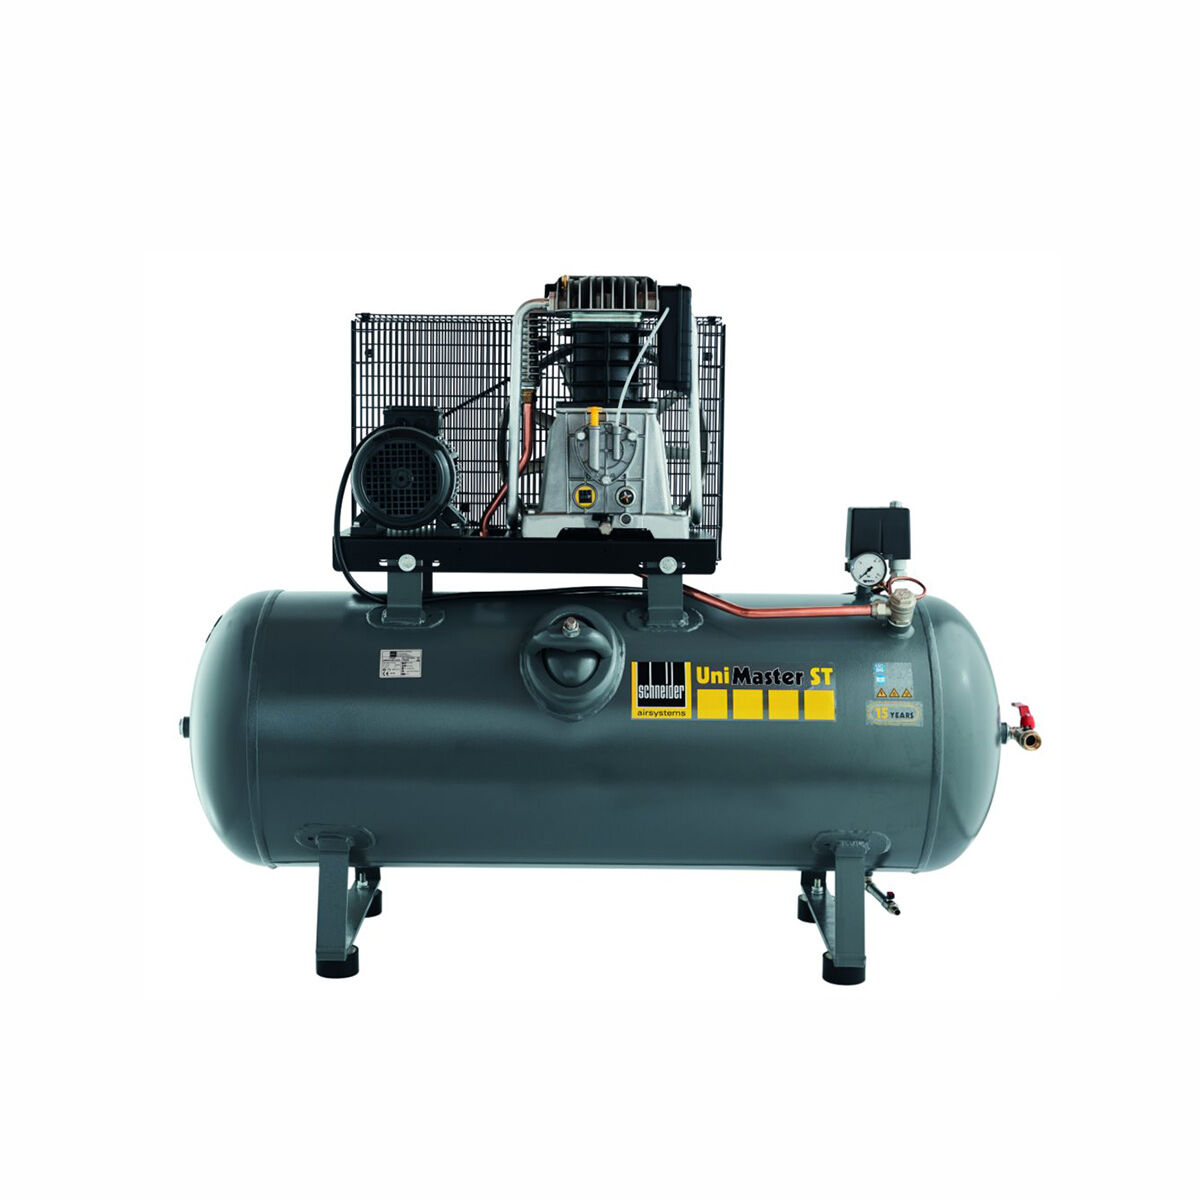 Schneider-Kompressor UNM STL 780-15-270 C 1121570226